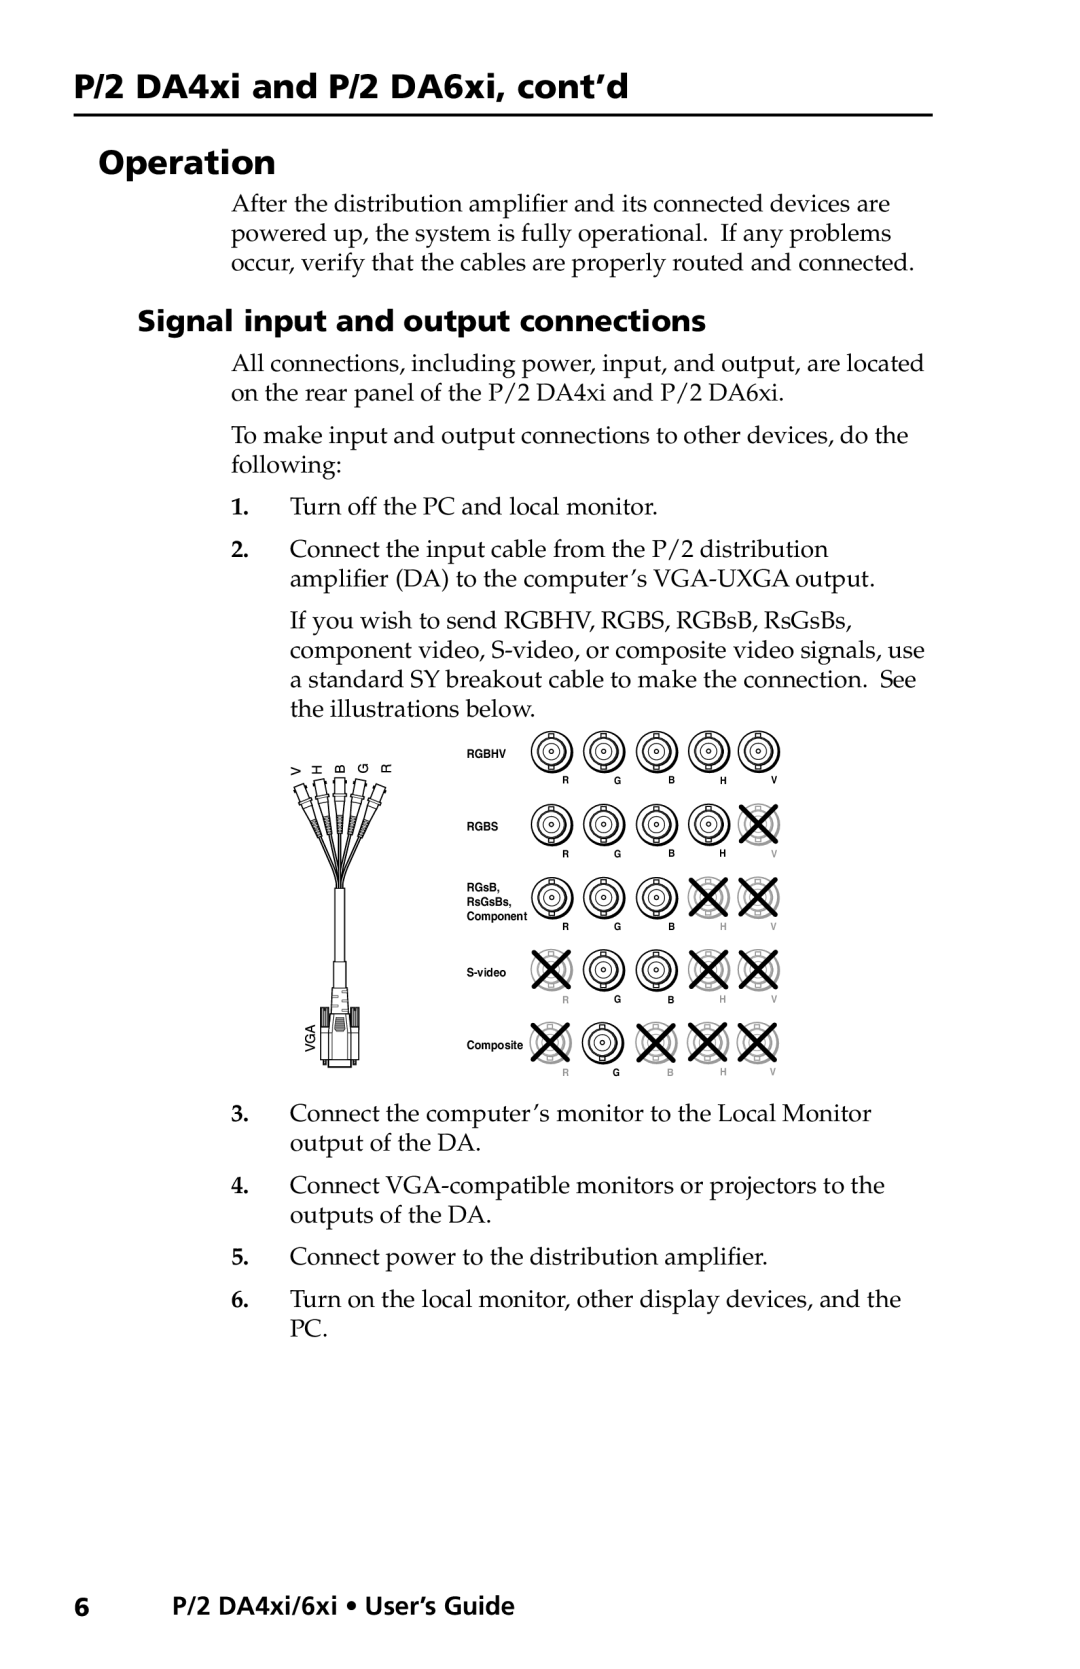 Extron electronic P/2 DA6xi s, P/2 DA4xi s Operation, Signal input and output connections, 6P/2 DA4xi/6xi User’s Guide 